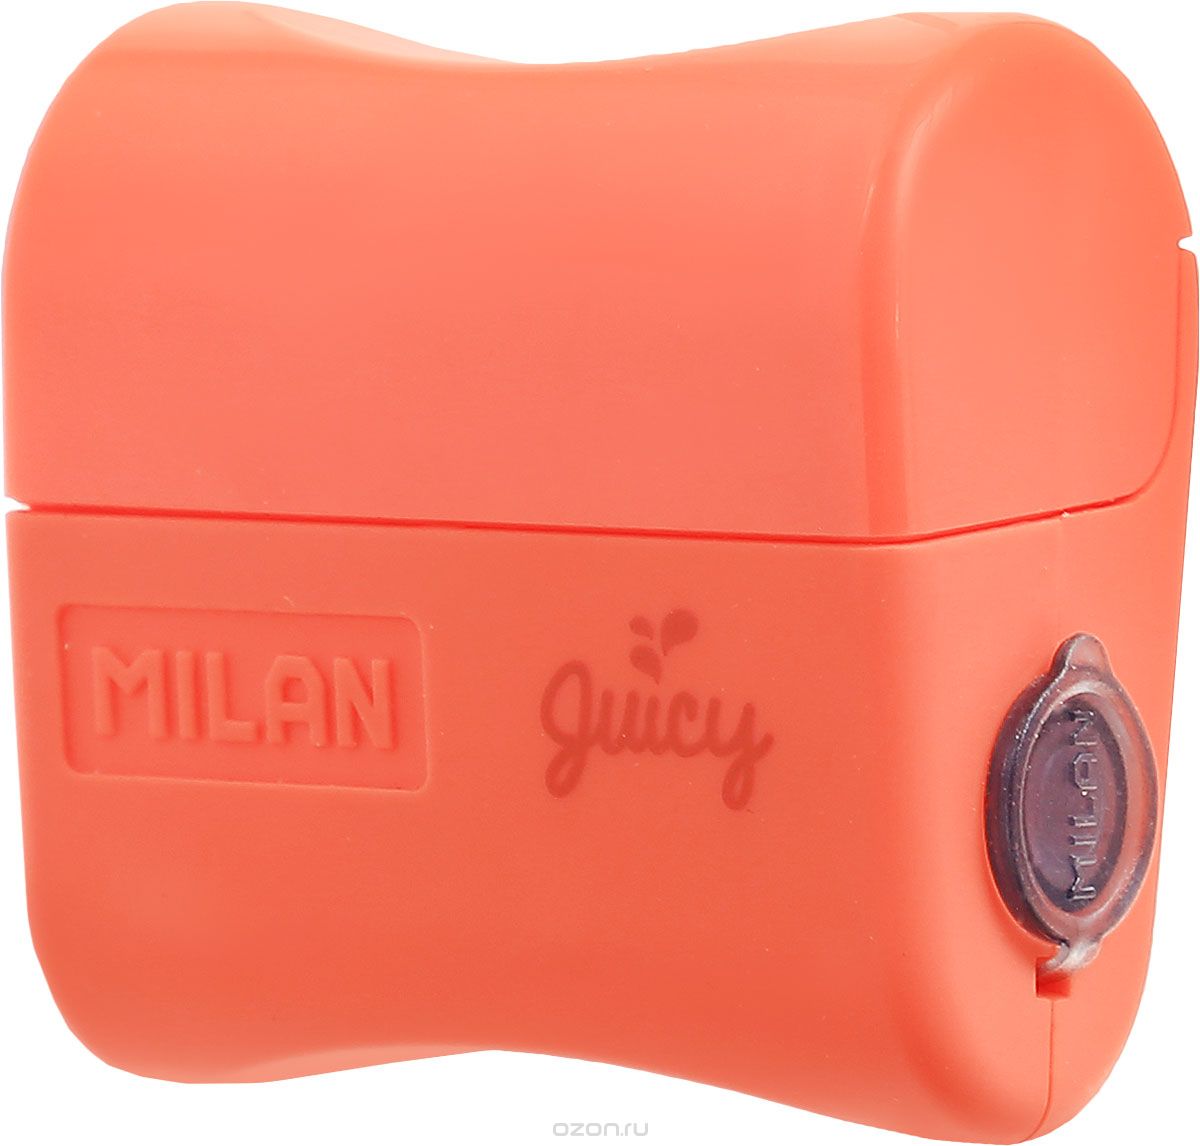 Milan  Juicy    